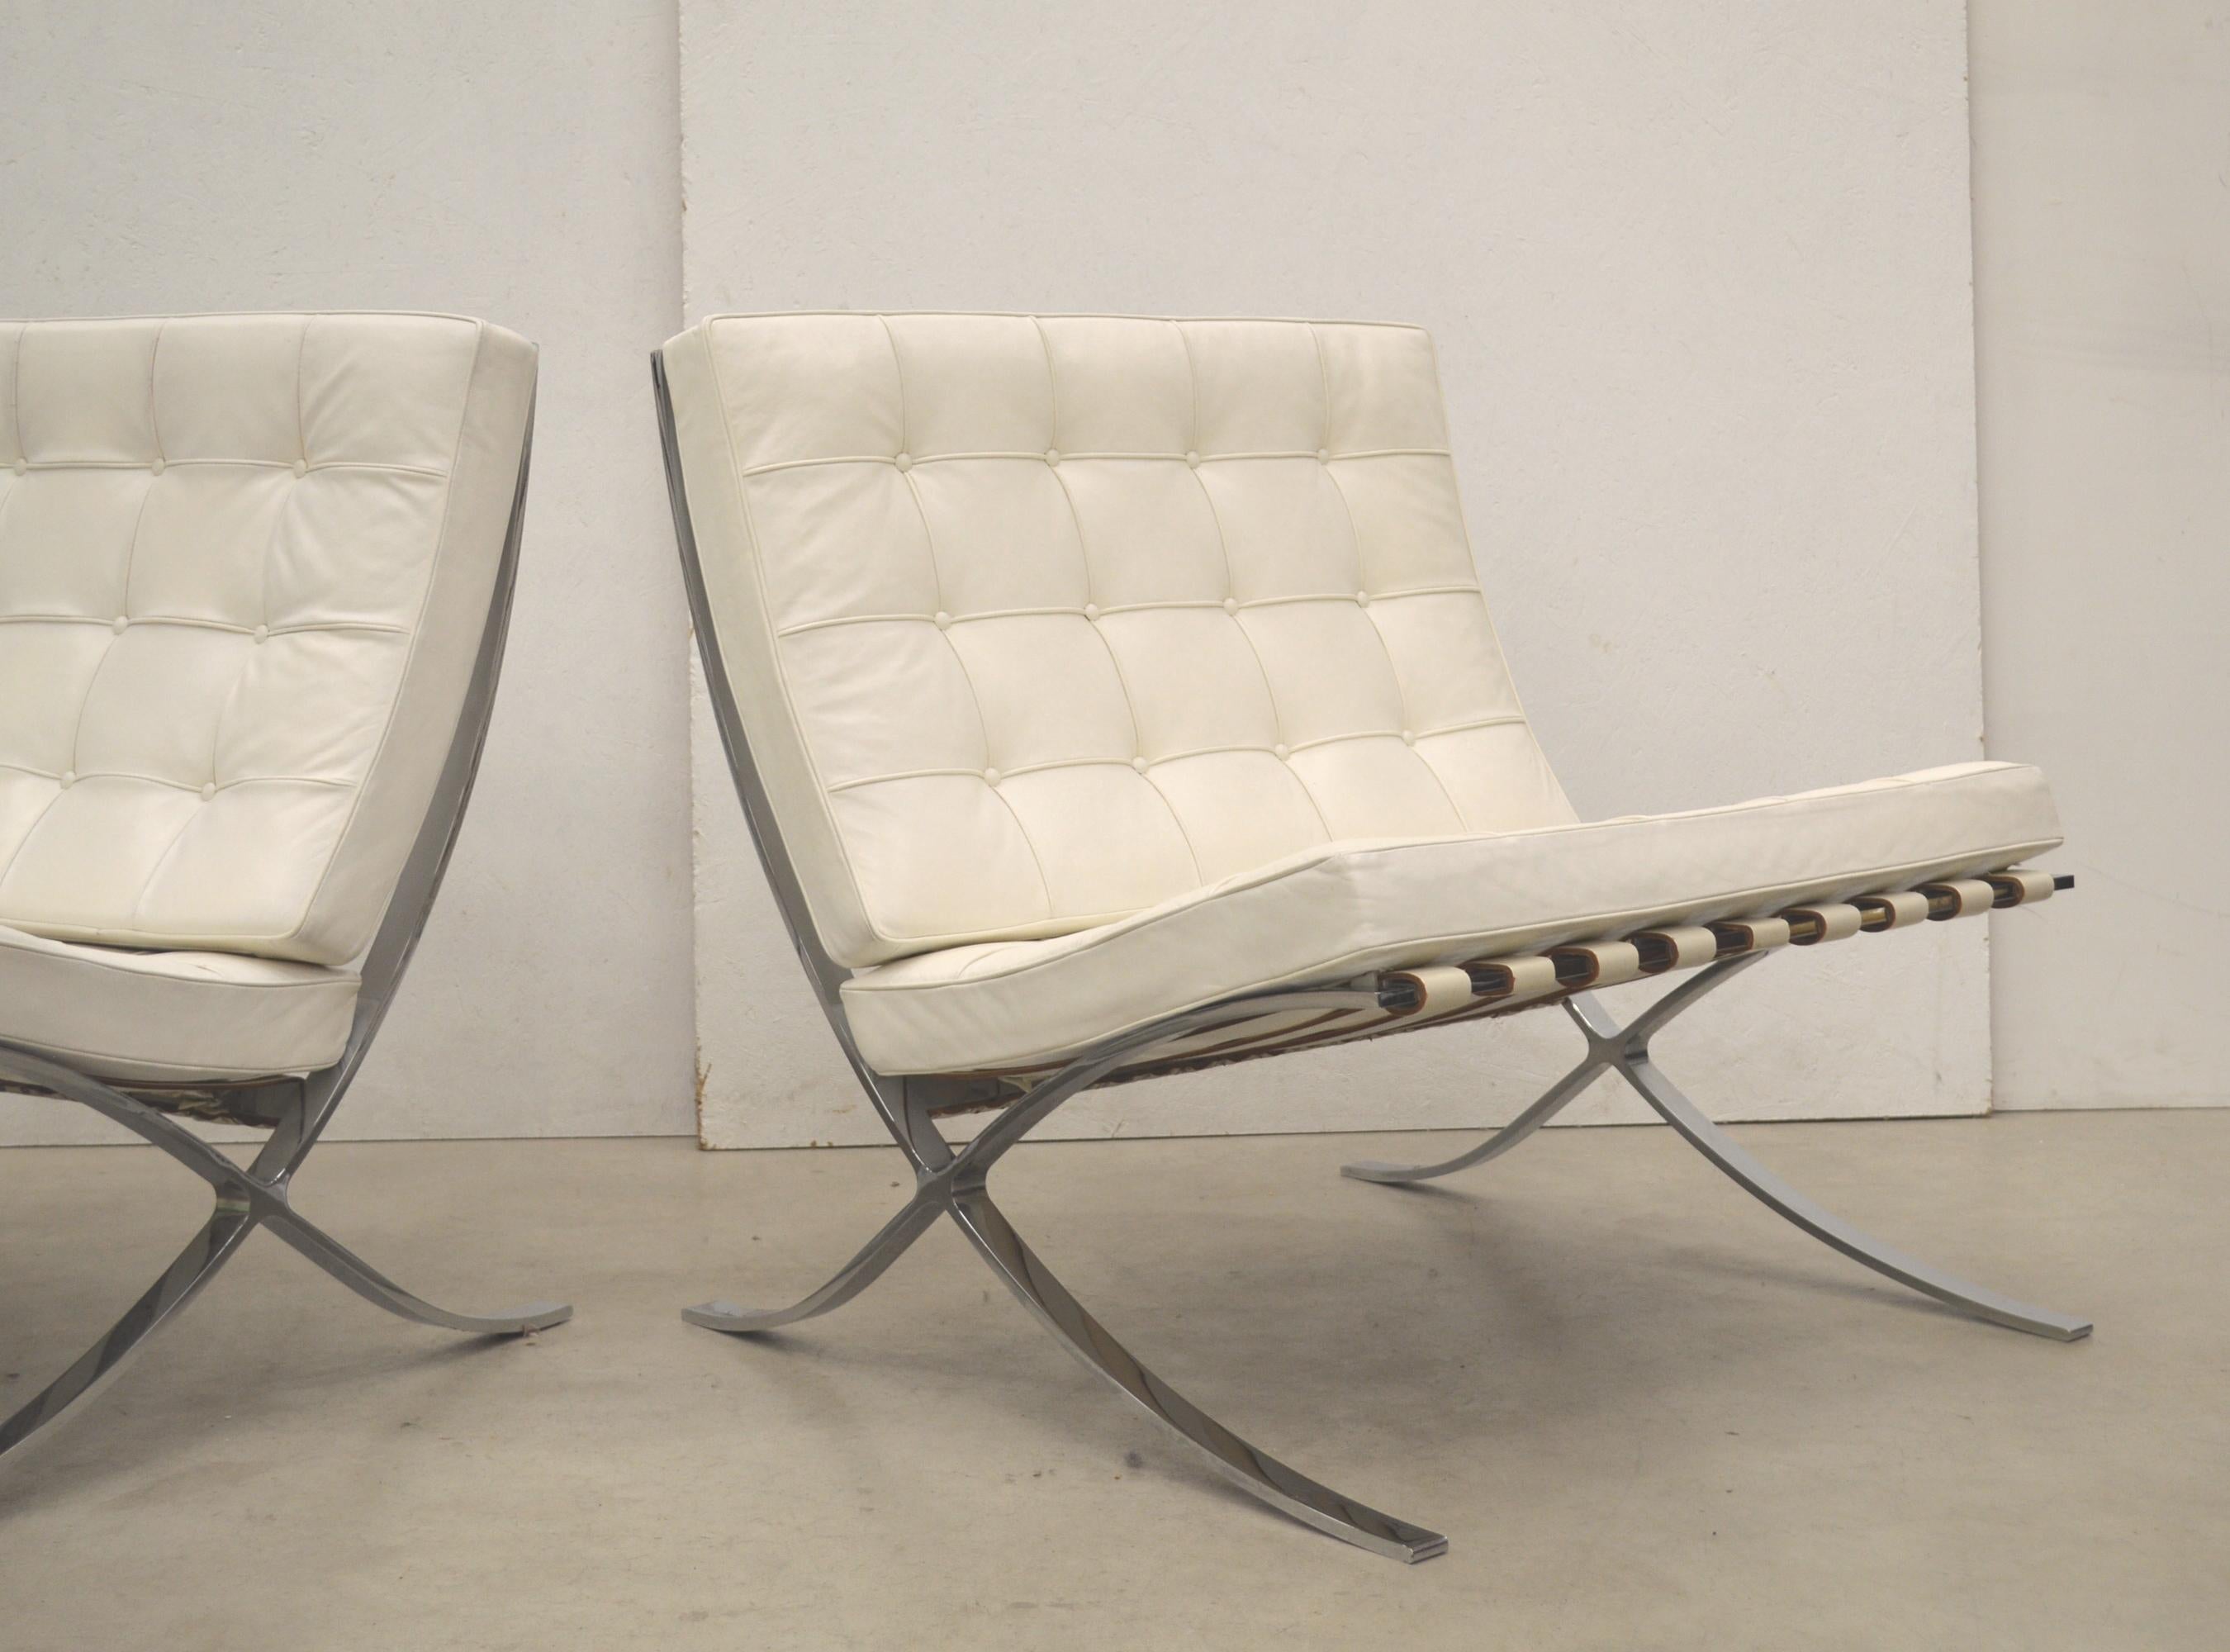 Diese sehr seltenen Barcelona-Stühle wurden 1929 von Mies van der Rohe entworfen und 1981 von Knoll anlässlich des 30-jährigen Bestehens von Knoll International hergestellt. 

Vor diesem Hintergrund produzierte Knoll 1981 eine sehr seltene